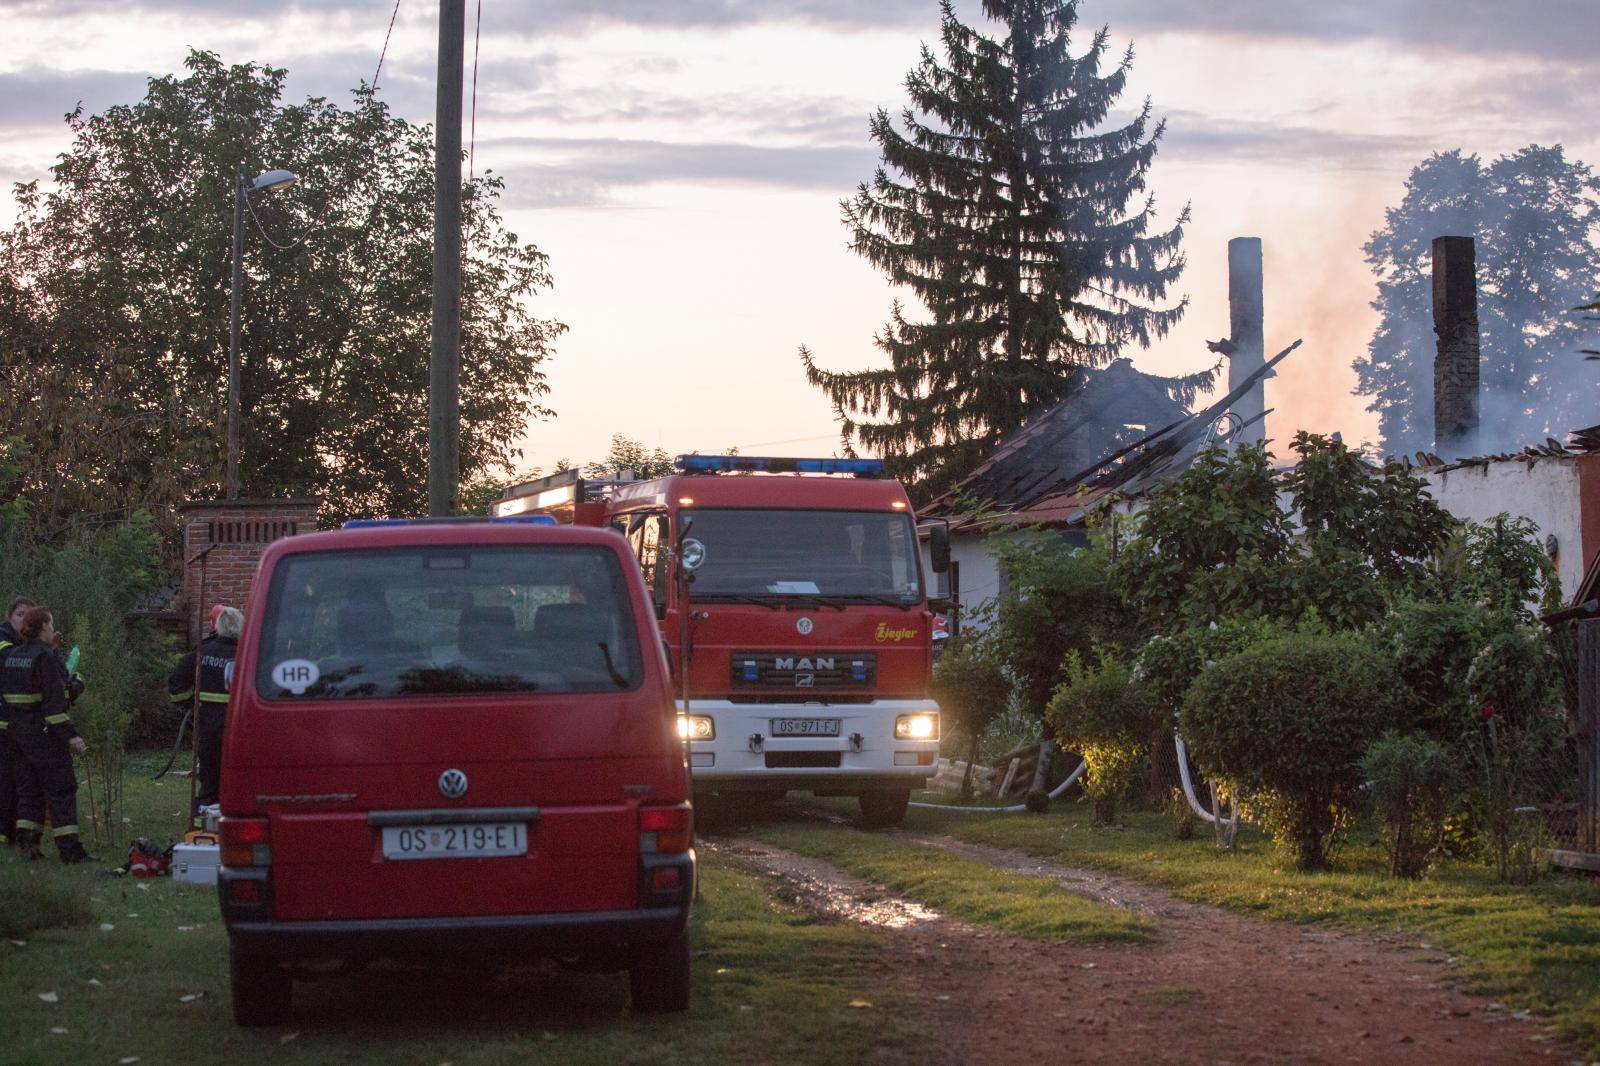 Kuća im izgorjela, a on obolio: 'Više nema ni moga Zvonimira'